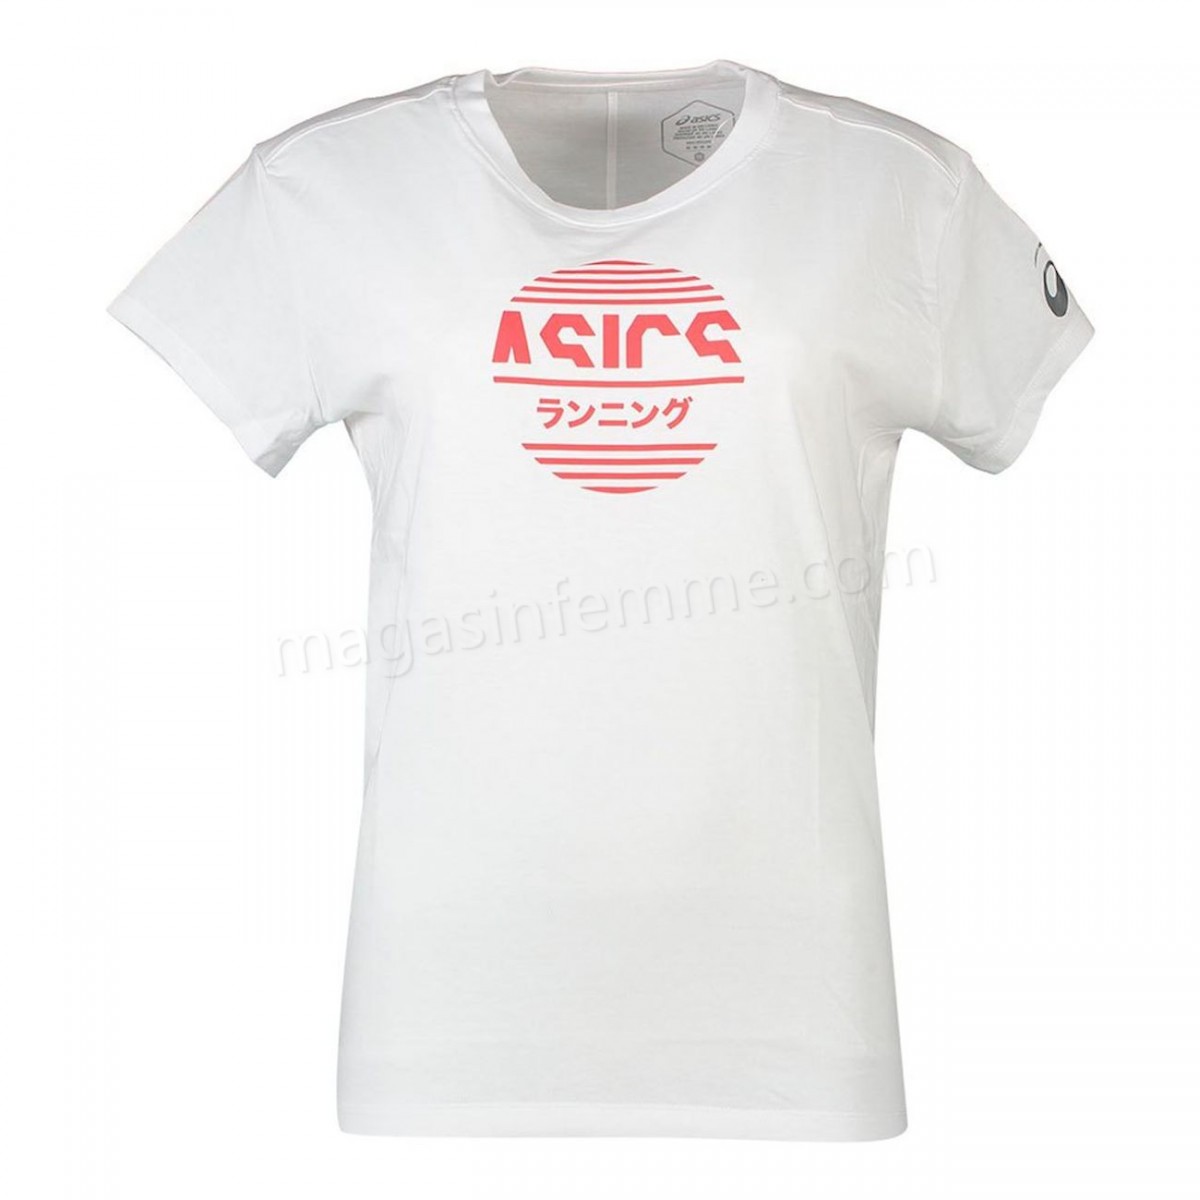 Asics-Fitness femme ASICS T-shirt femme Asics Tokyo Graphic en solde - -0